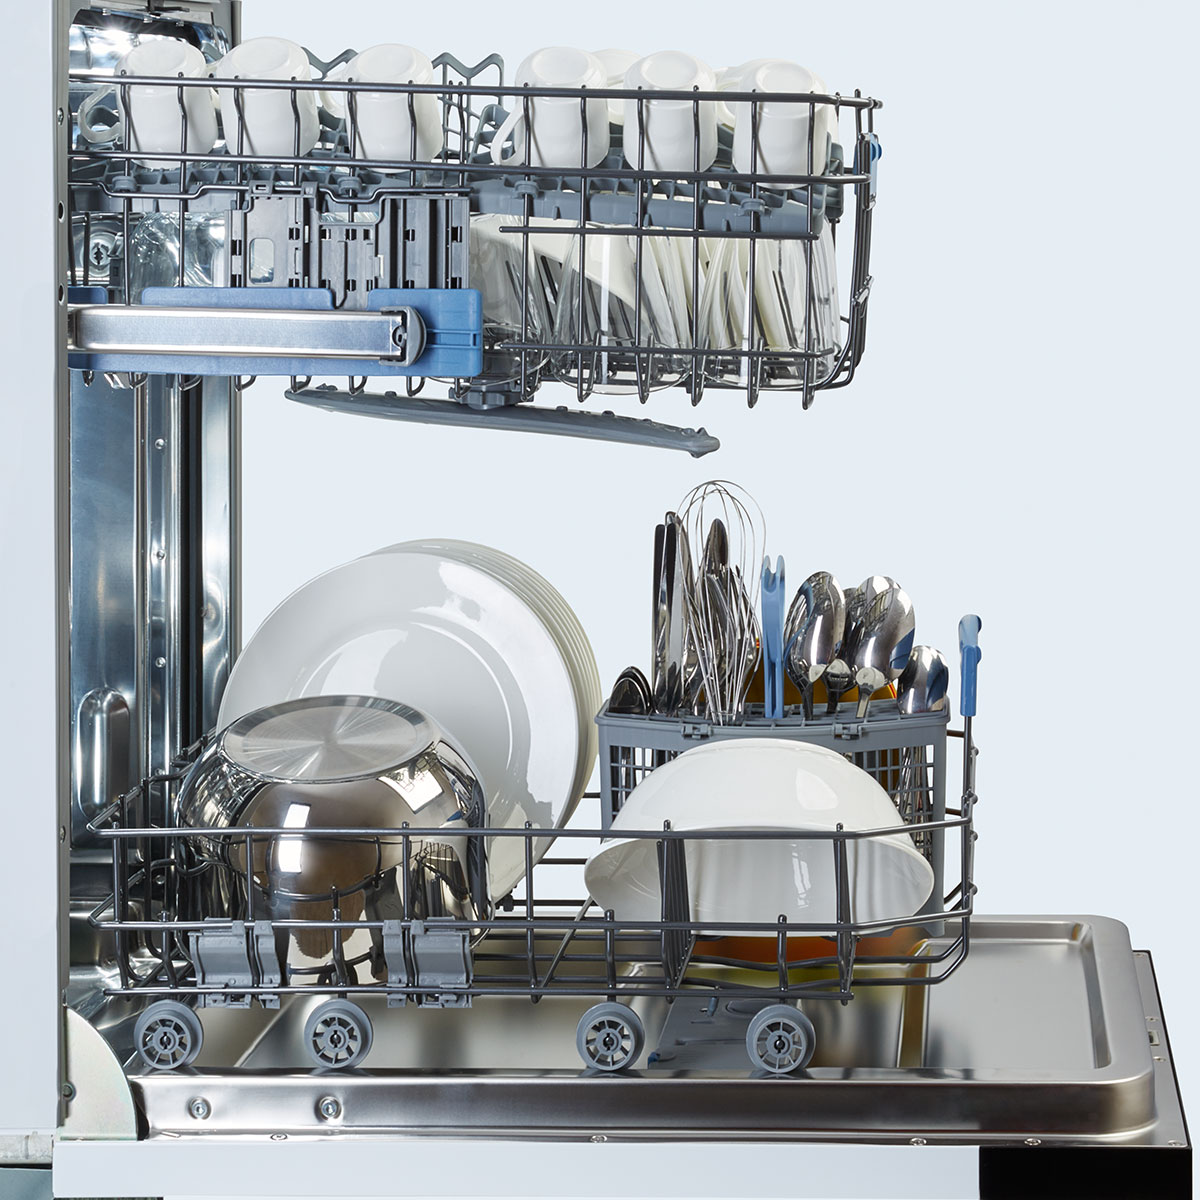 Посудомоечные машинки видео. Посудомоечная машина Freggia dwi4106. Посудомоечная машина Smeg st321-1. Посудомойка 45 см. Посудомоечная машина Beko Dwi 645.